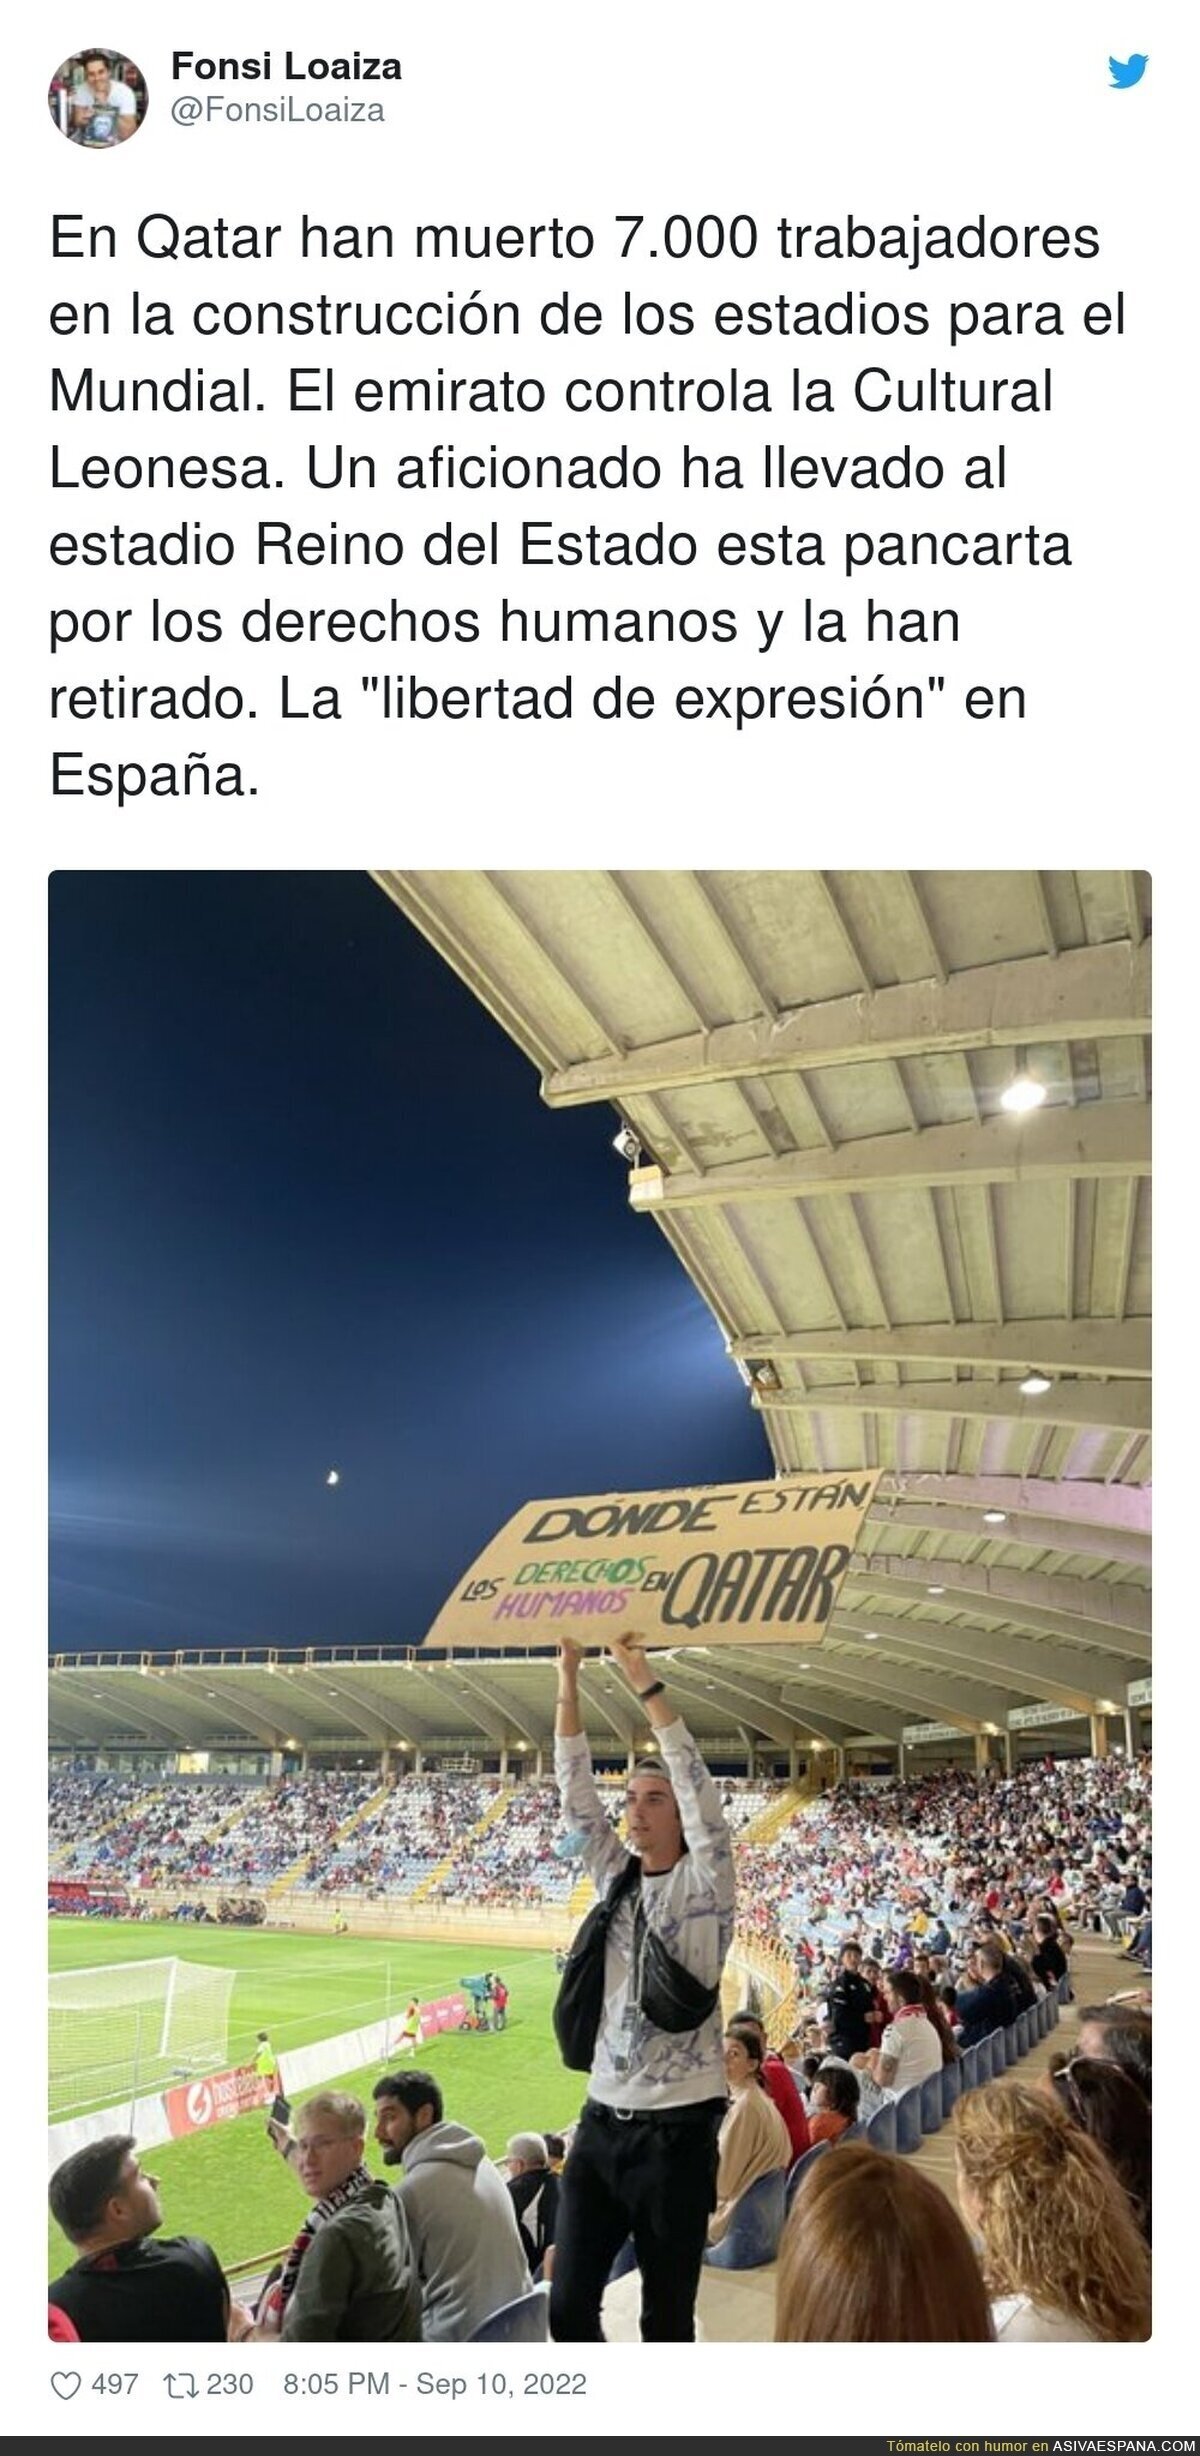 Retiraron la pancarta y expulsaron al chaval que la portaba. El estadio es el Reino de León, para vergüenza de los leoneses, por @FonsiLoaiza